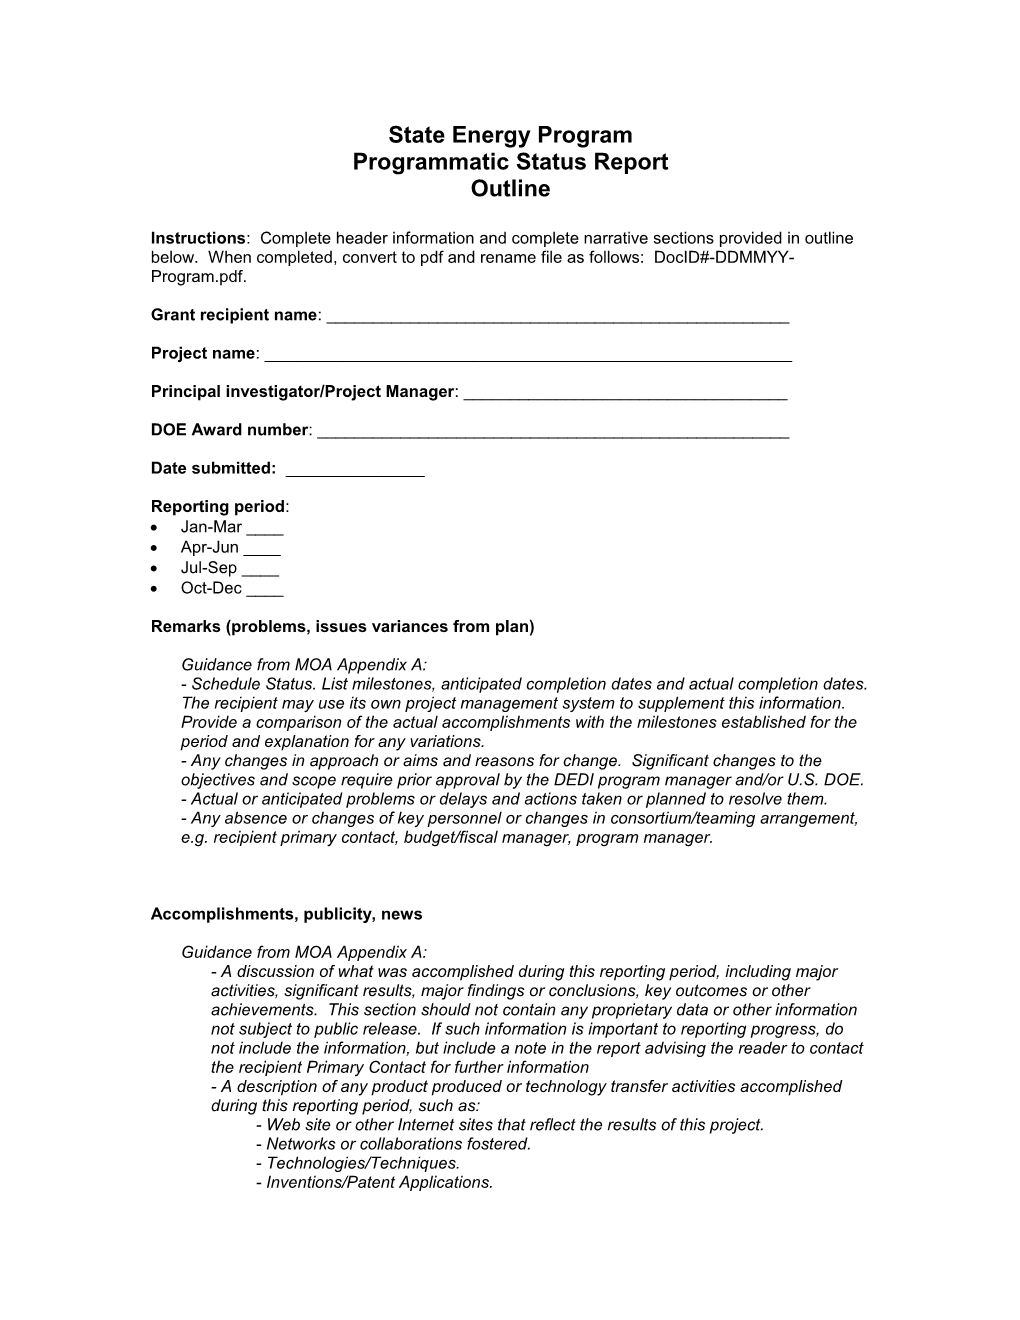 SEP- Programmatic Status Report